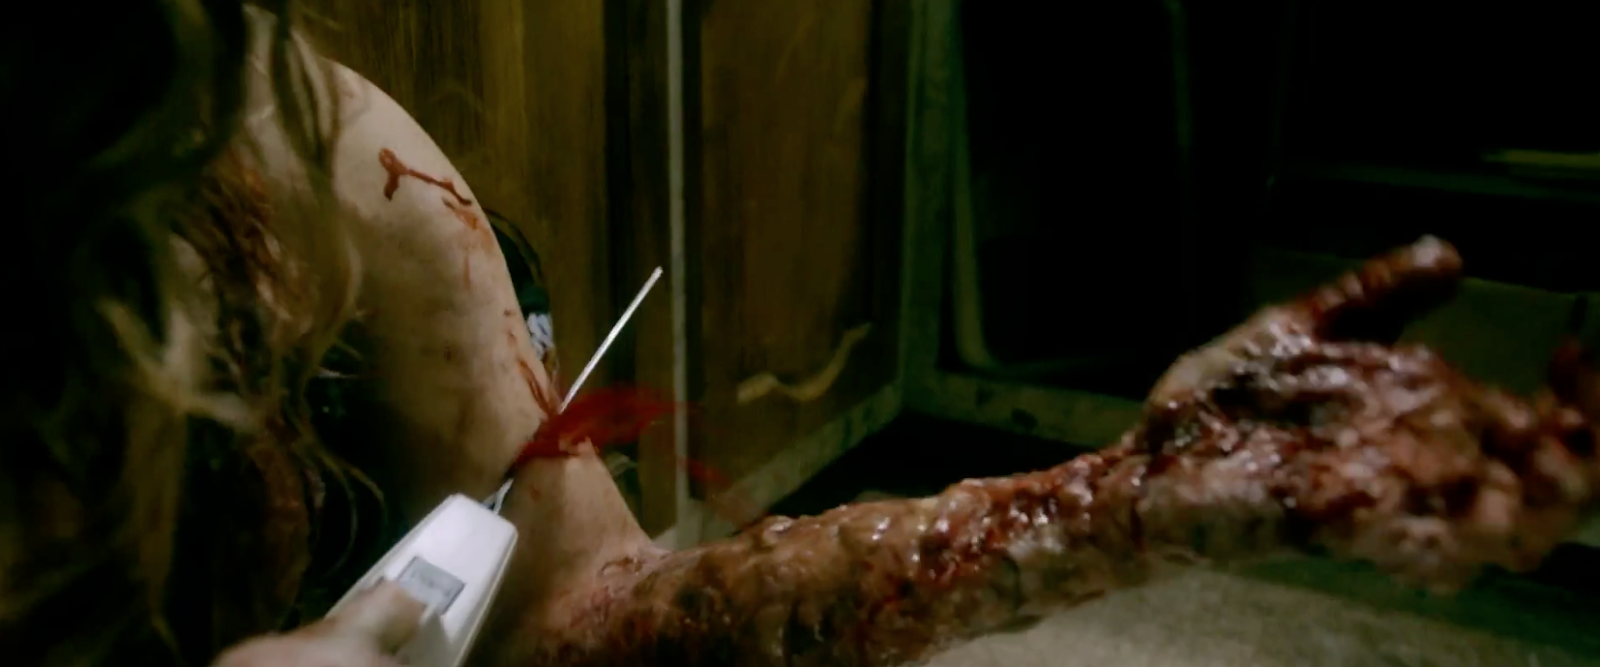 evil-dead-remake-2013-arm-cuttting-scene